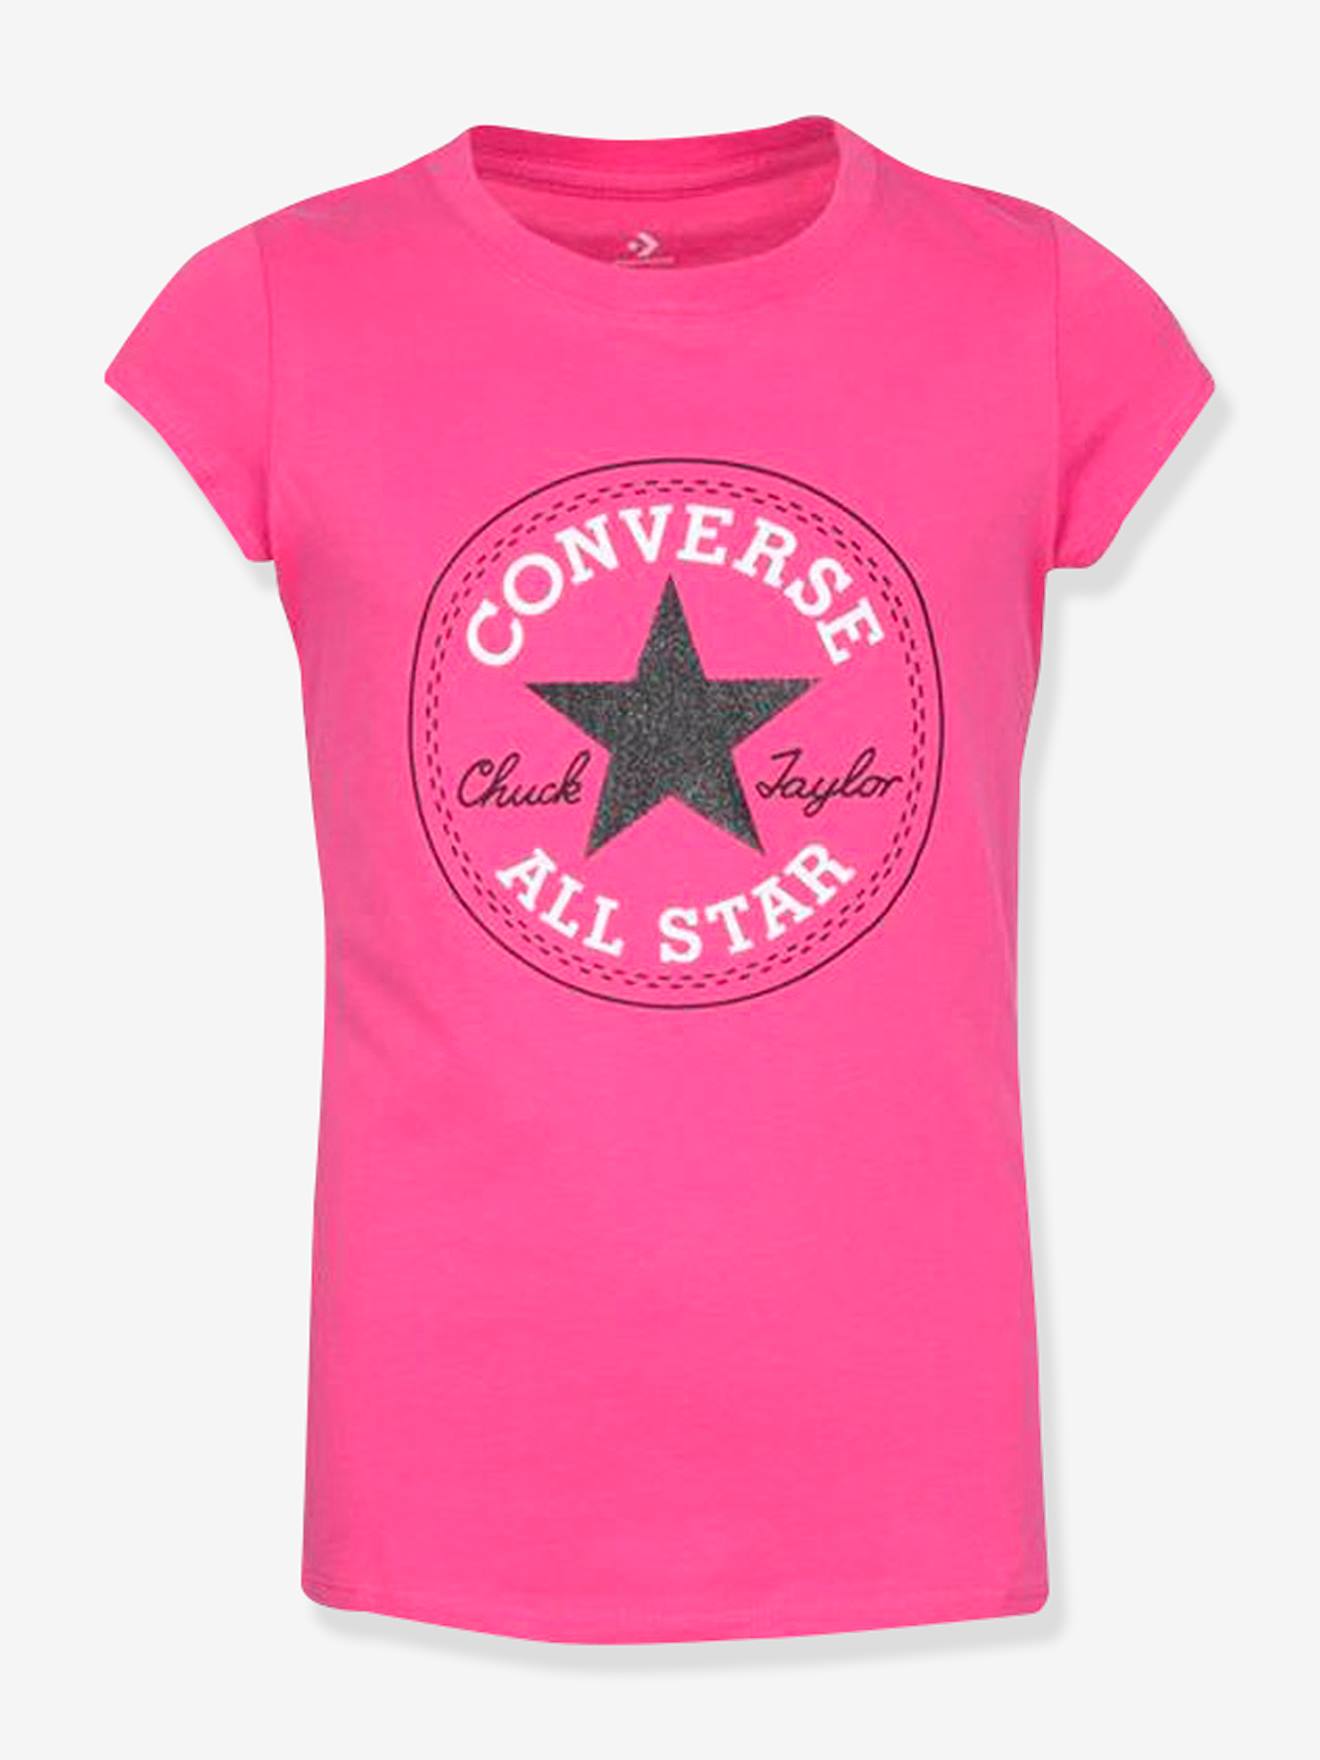 Kinder-T-shirt Chuck Patch CONVERSE rozen